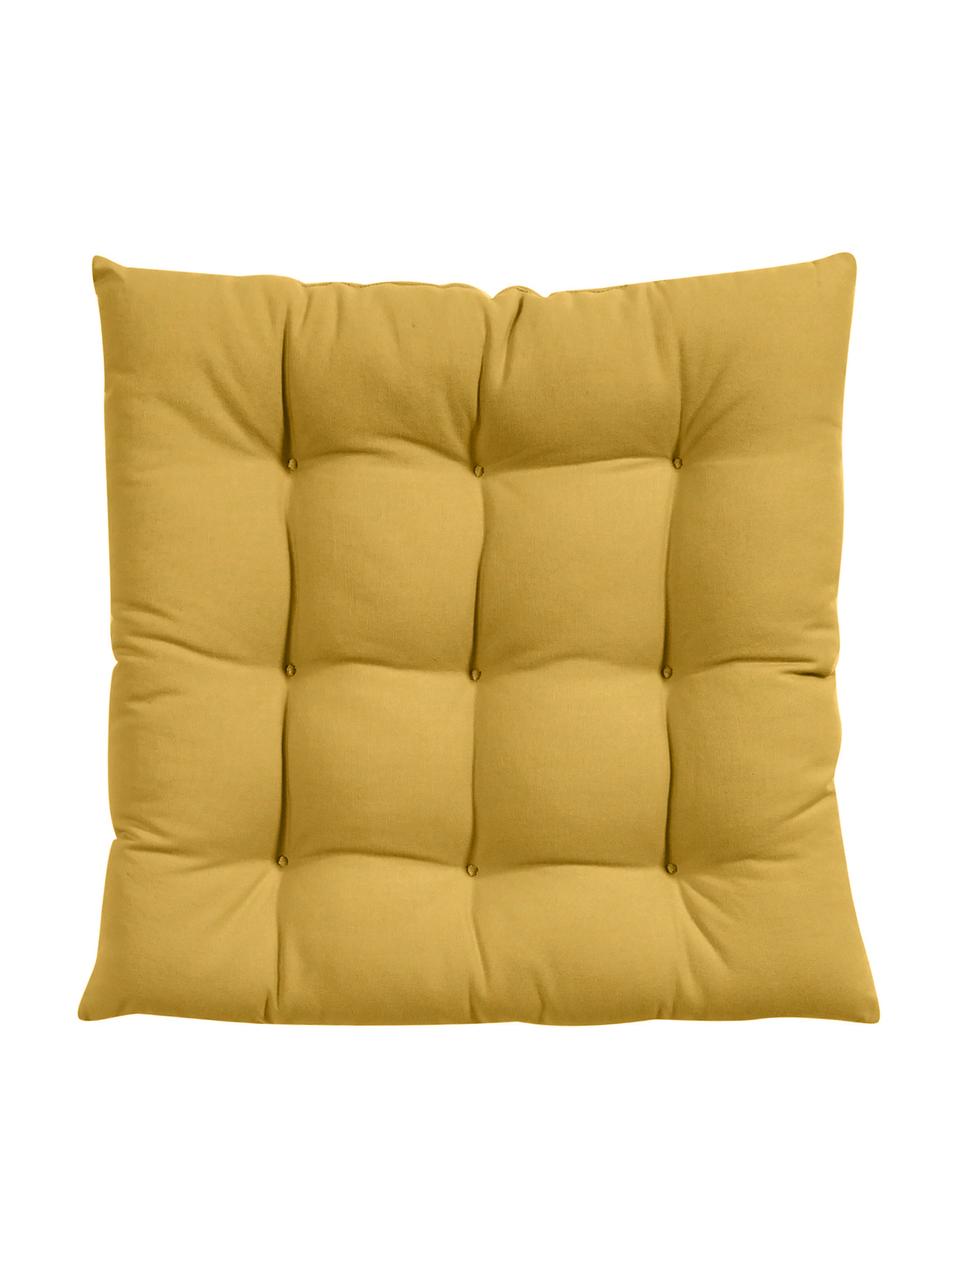 Sitzkissen Ava in Gelb, Bezug: 100% Baumwolle, Gelb, 40 x 40 cm